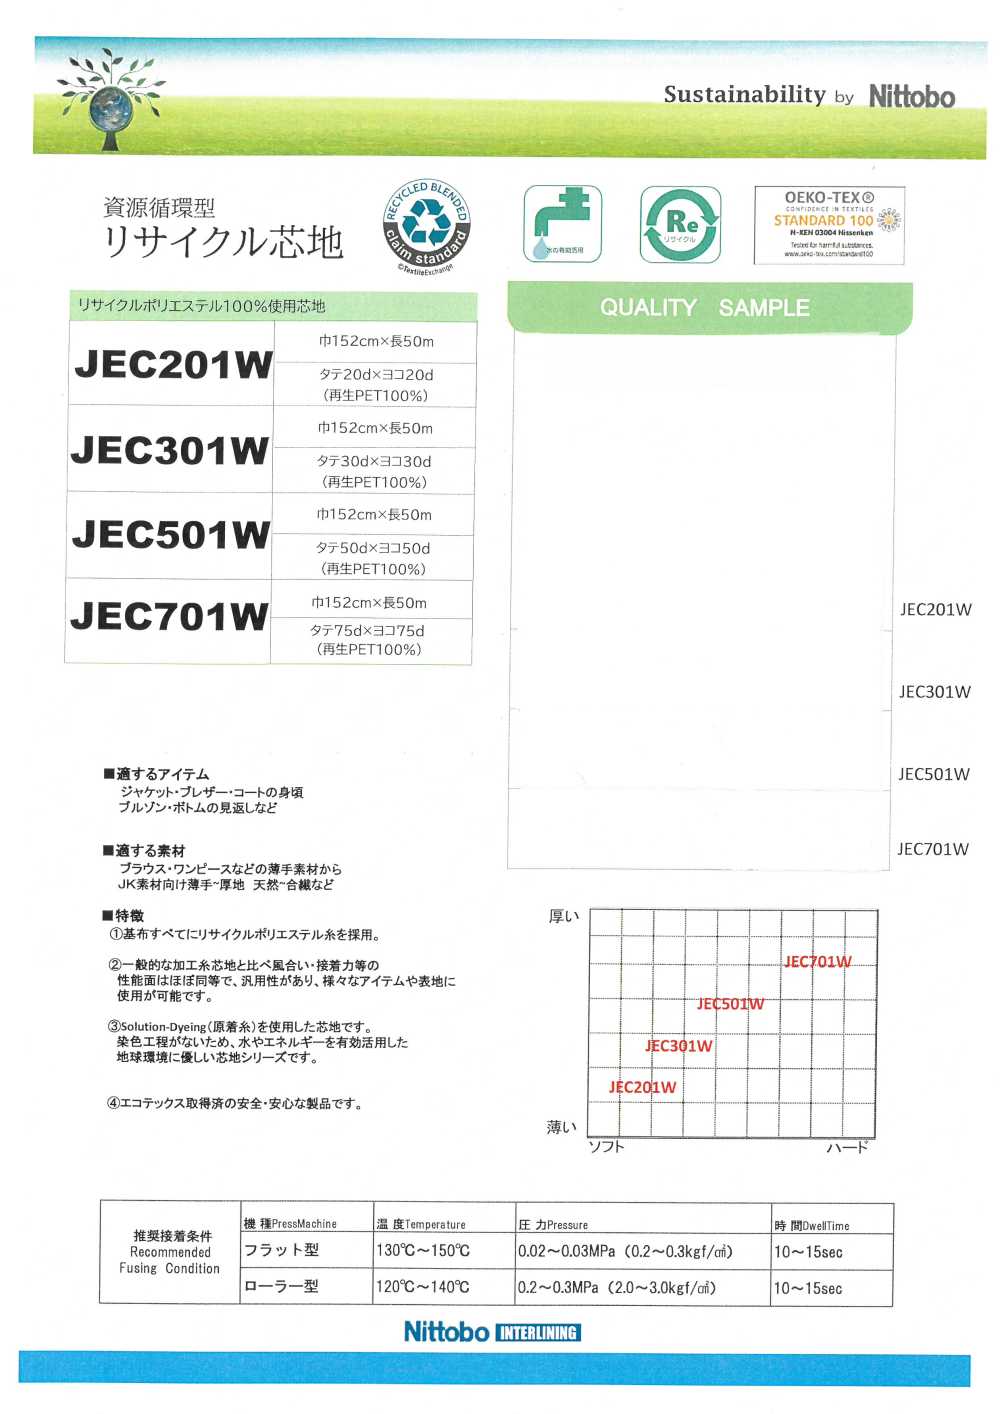 JEC301W Matériaux Réutilisés 30D D